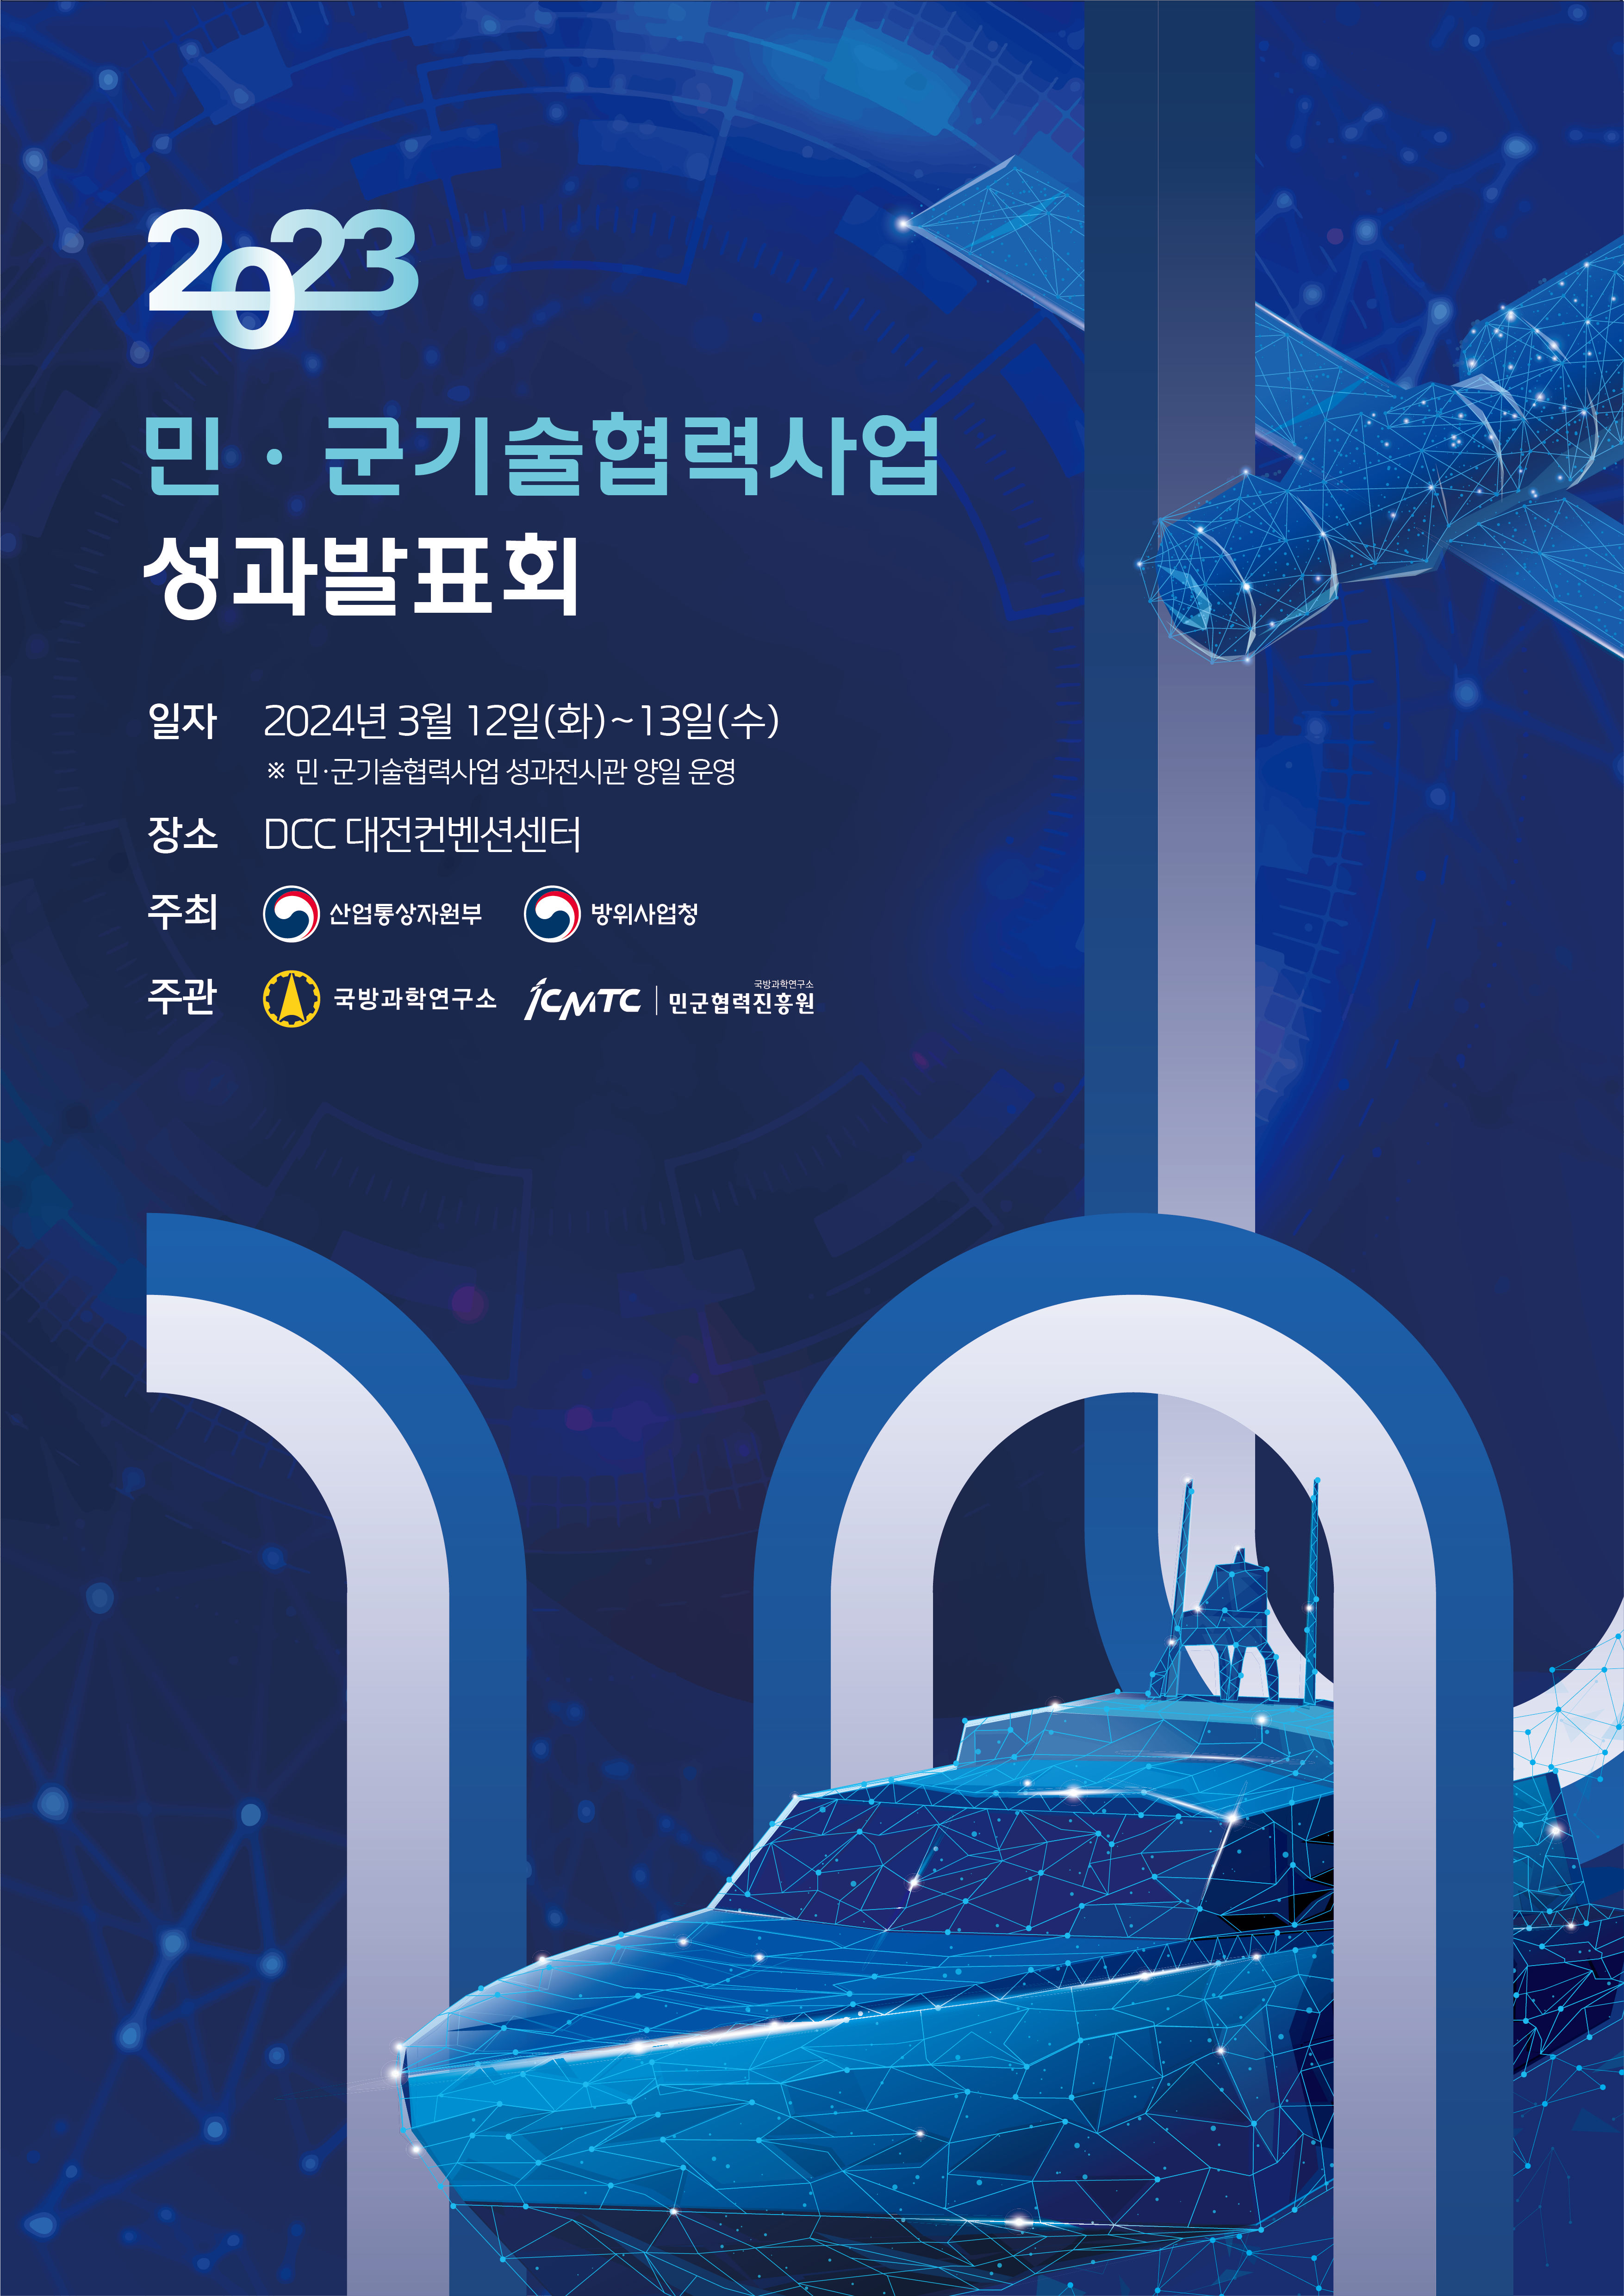 붙임3.2023년 성과발표회_홍보 포스터.png